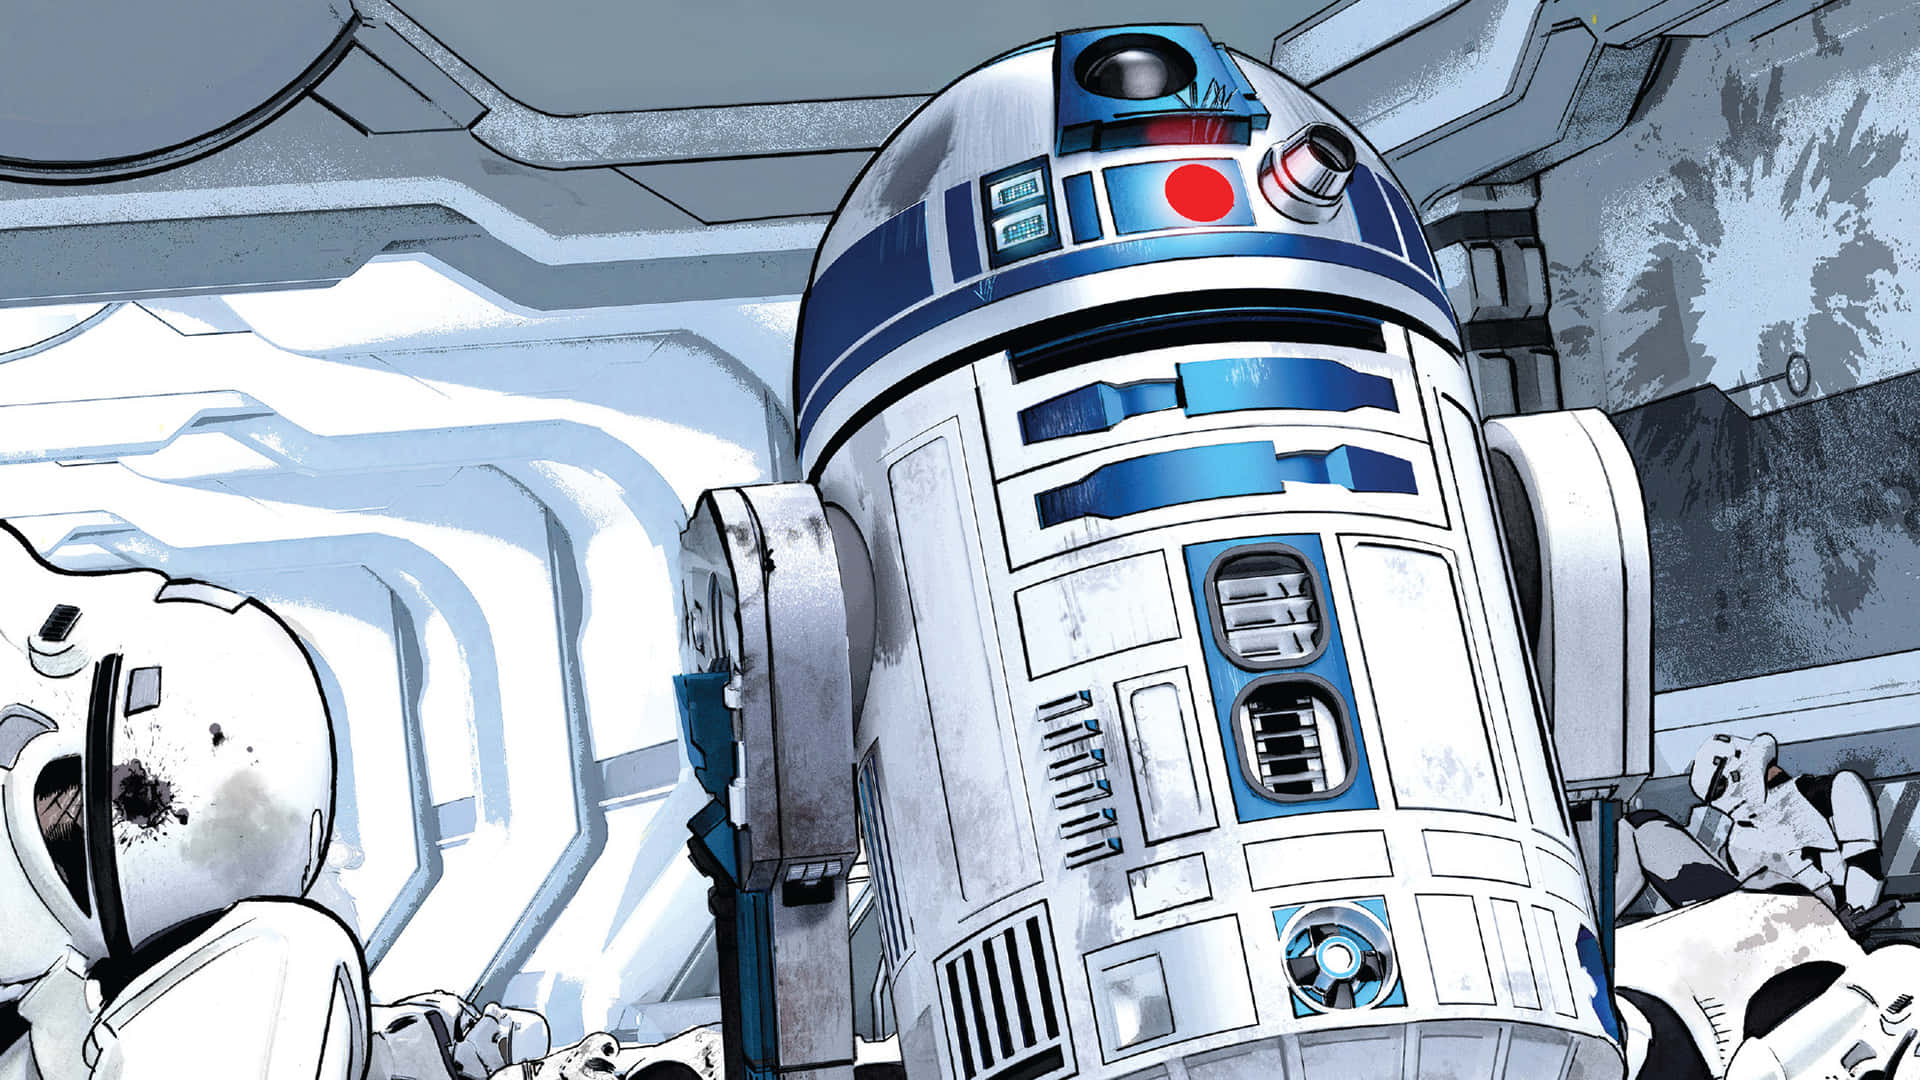 Korrektbucklad R2d2 Från Star Wars. Wallpaper